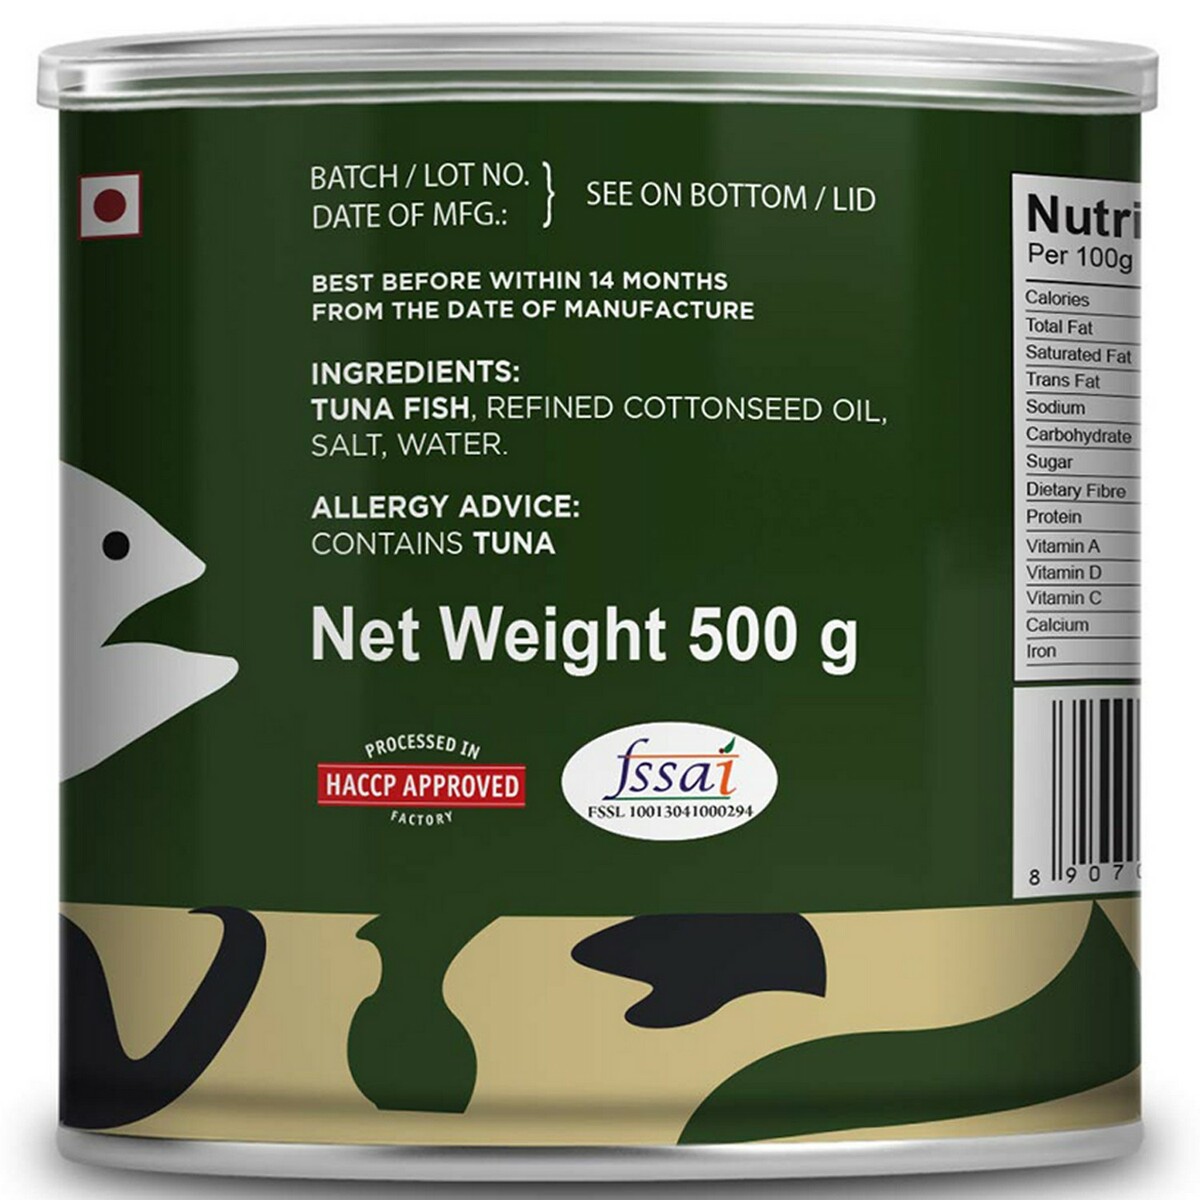 Tasty Nibbles Light Meat Tuna Chunks Oil Can 500G